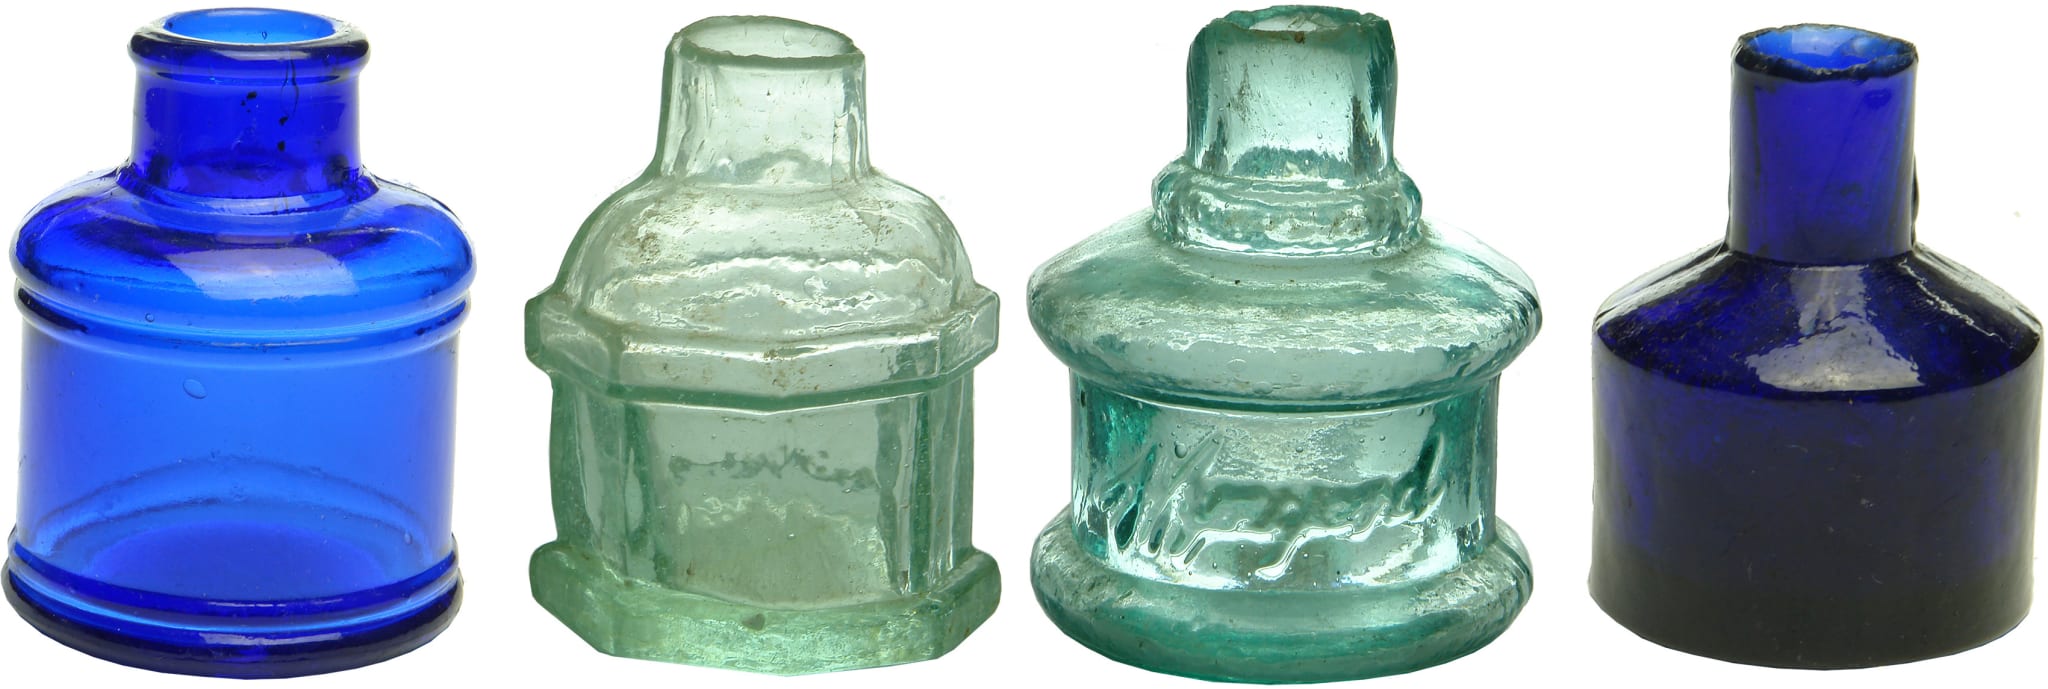 Antique Glass Ink Bottles